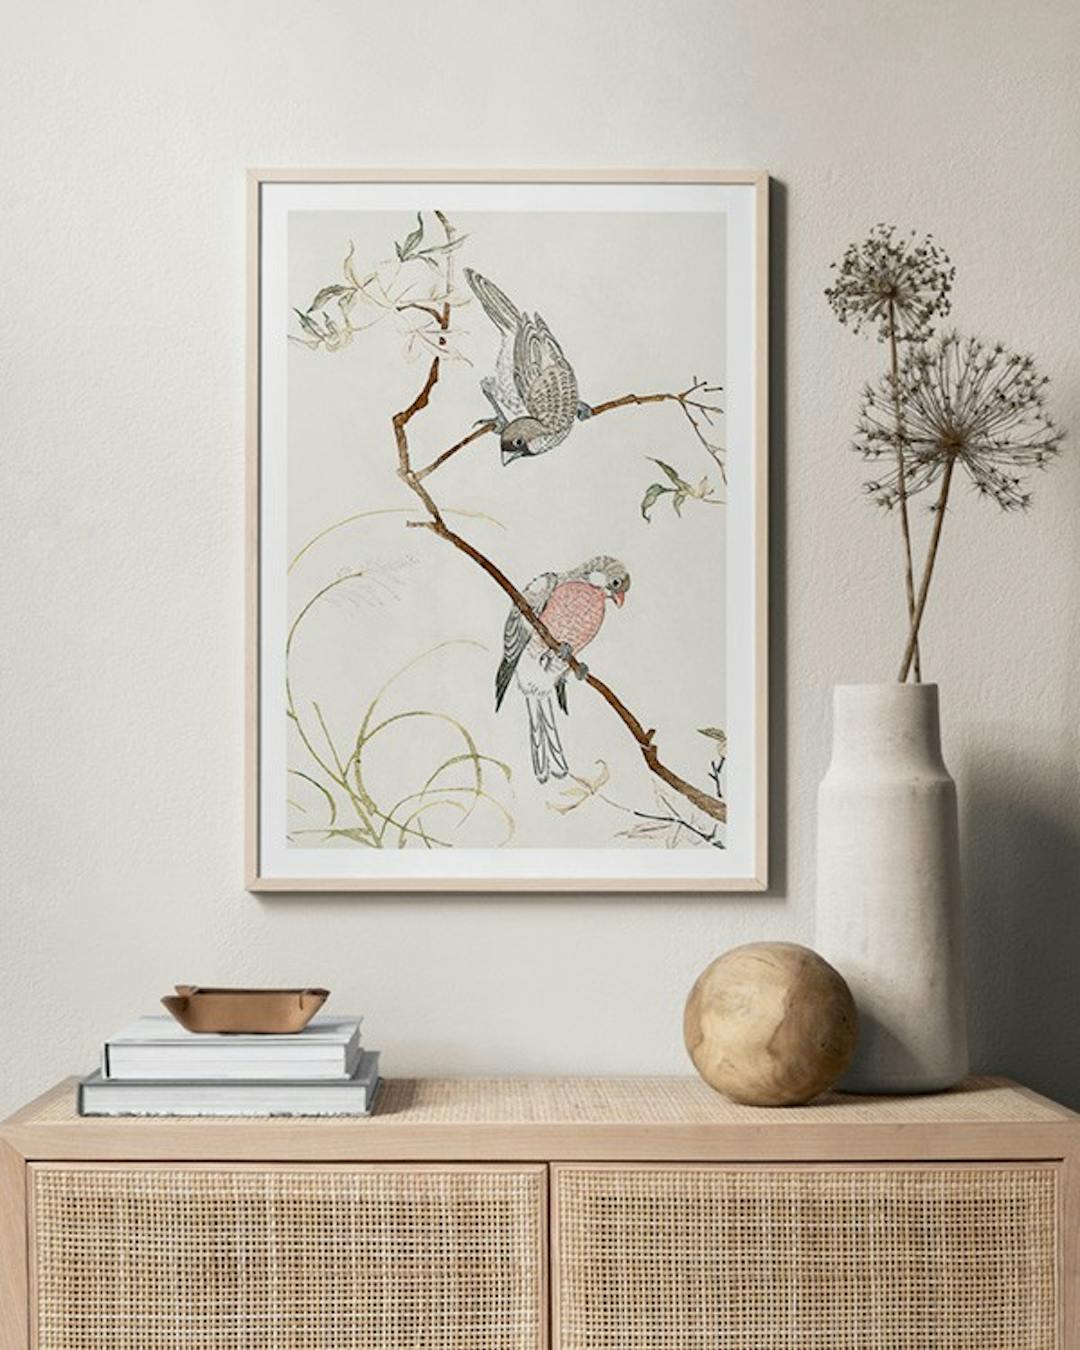 Japanese Seagulls Poster - Seagulls On Tree - Desenio.co.uk